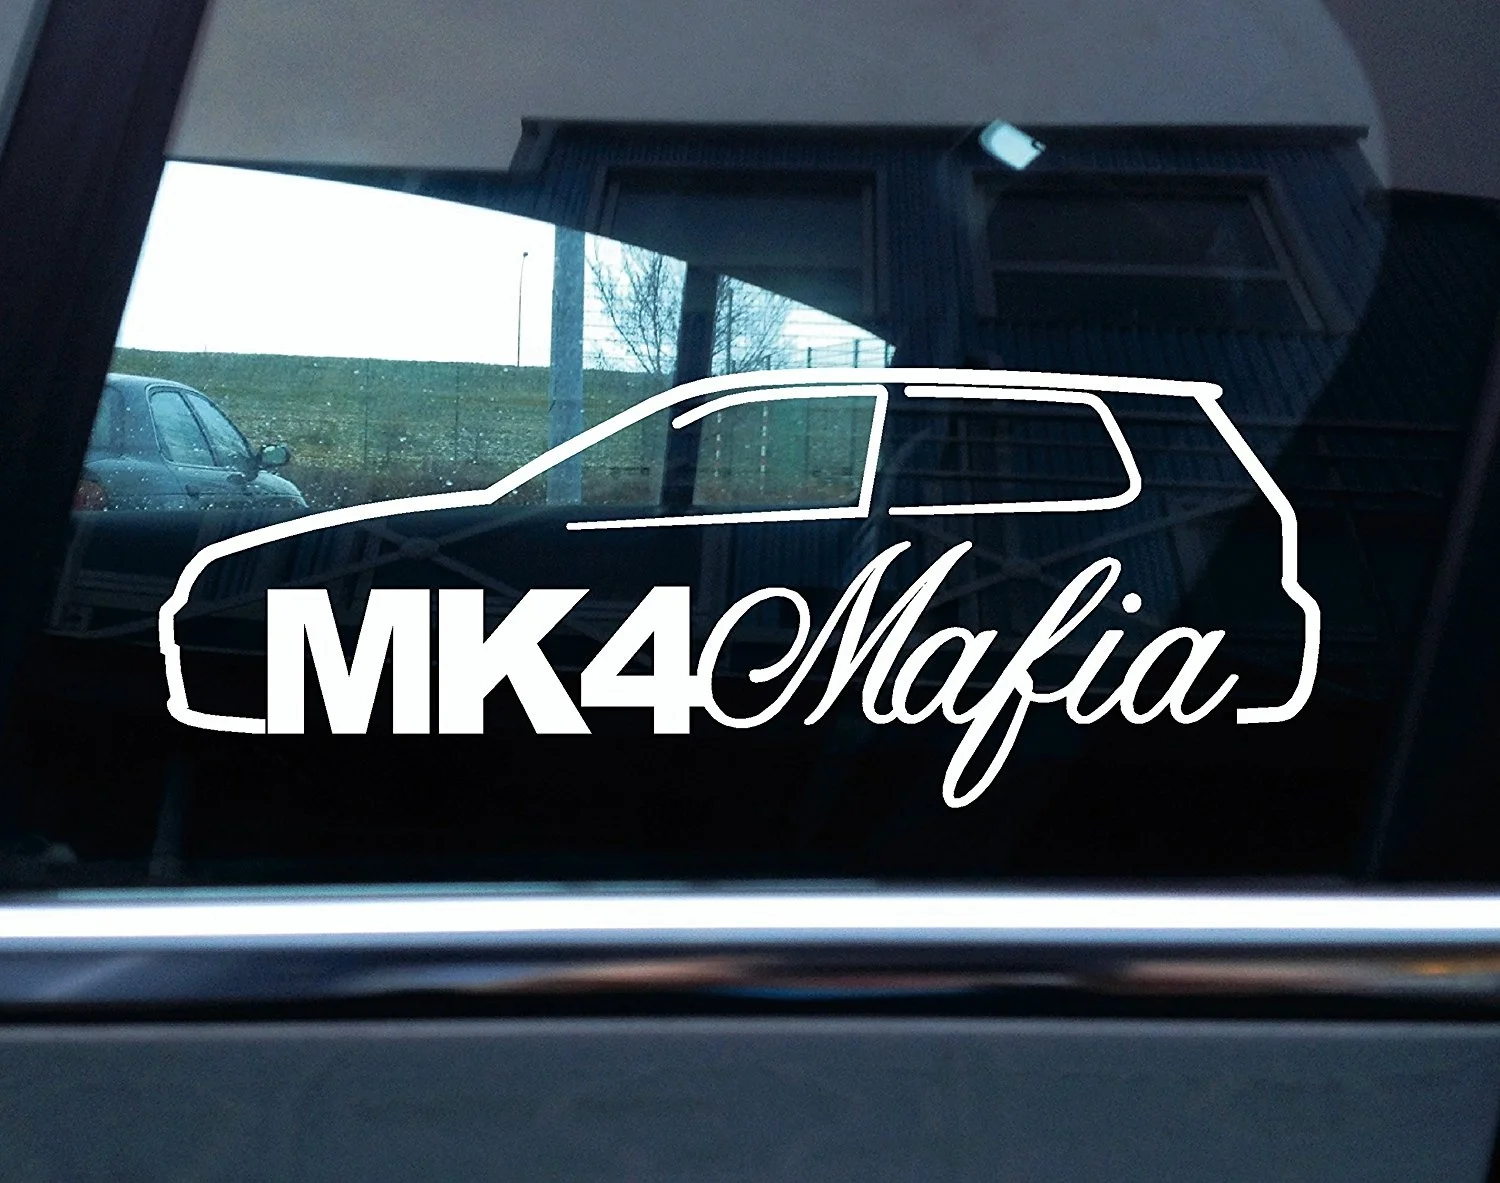 

For Mk4 Mafia Vinyl Sticker - Based on Vw Golf Mk4 R32 ,GTI Car Styling Car Sticker Computer Sticker